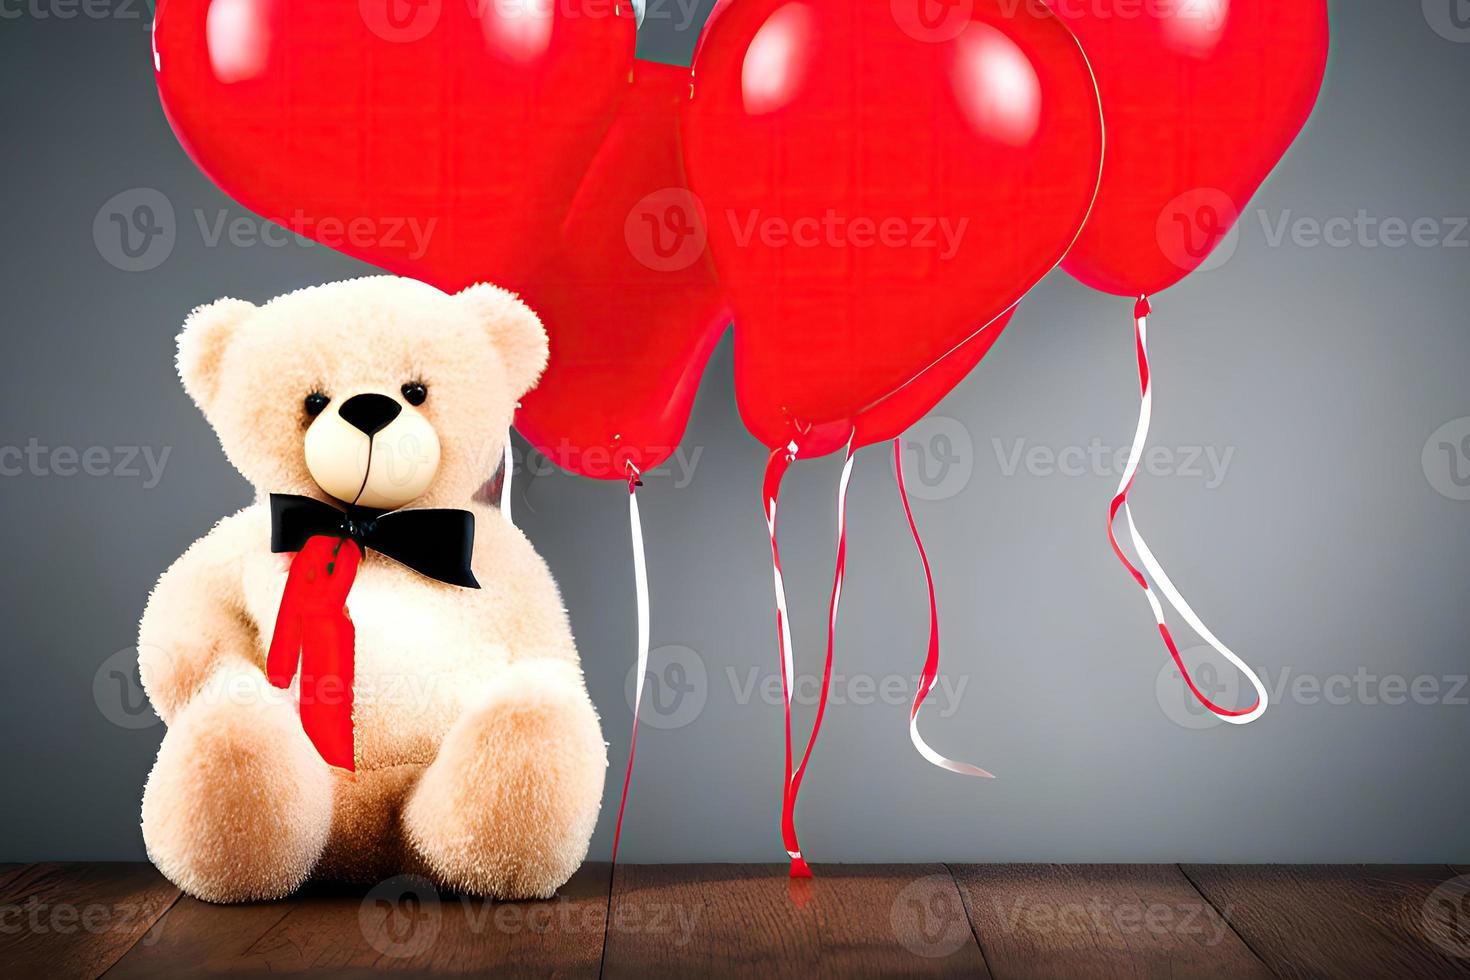 sorriso suave de um ursinho de pelúcia segurando um balão foto